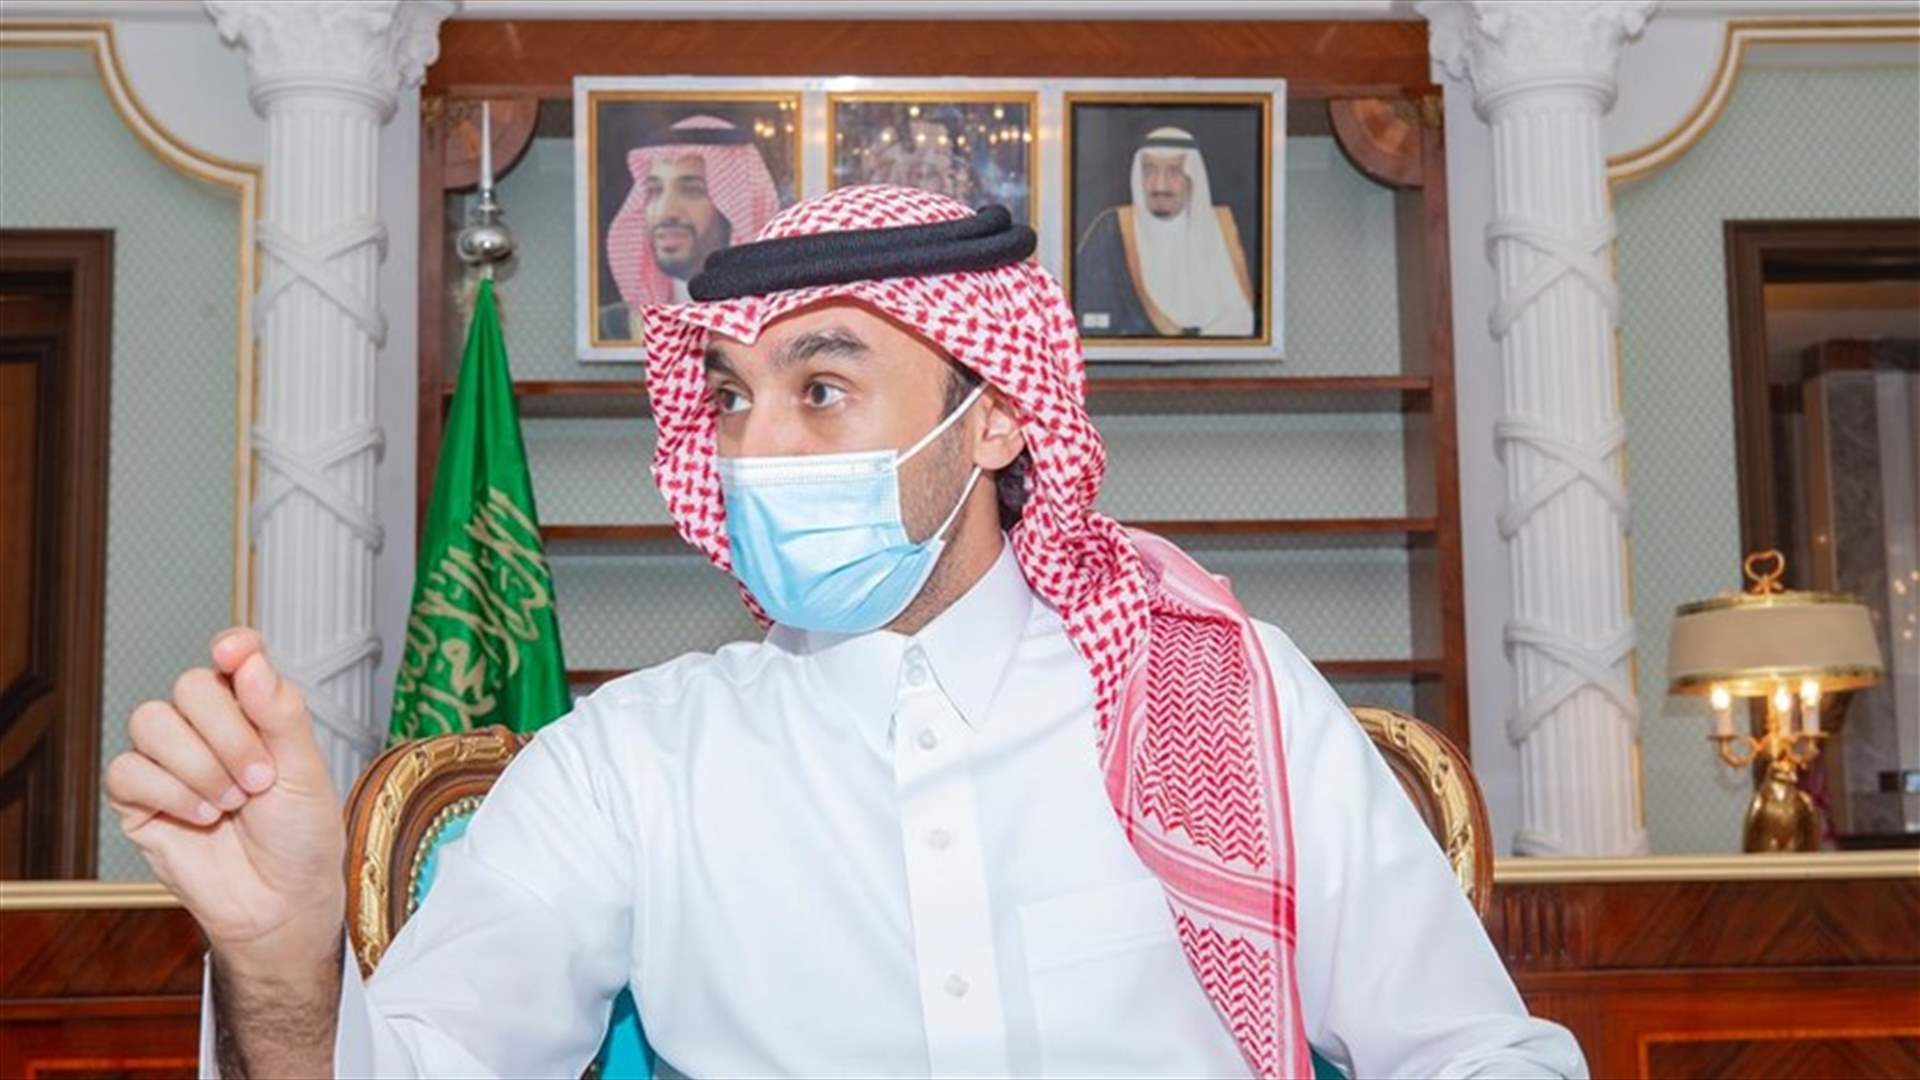 وزير الرياضة السعودي الأمير عبد العزيز بن تركي الفيصل يؤكد ثقته في الأندية السعودية المشاركة في دوري أبطال آسيا 2020 لكرة القدم